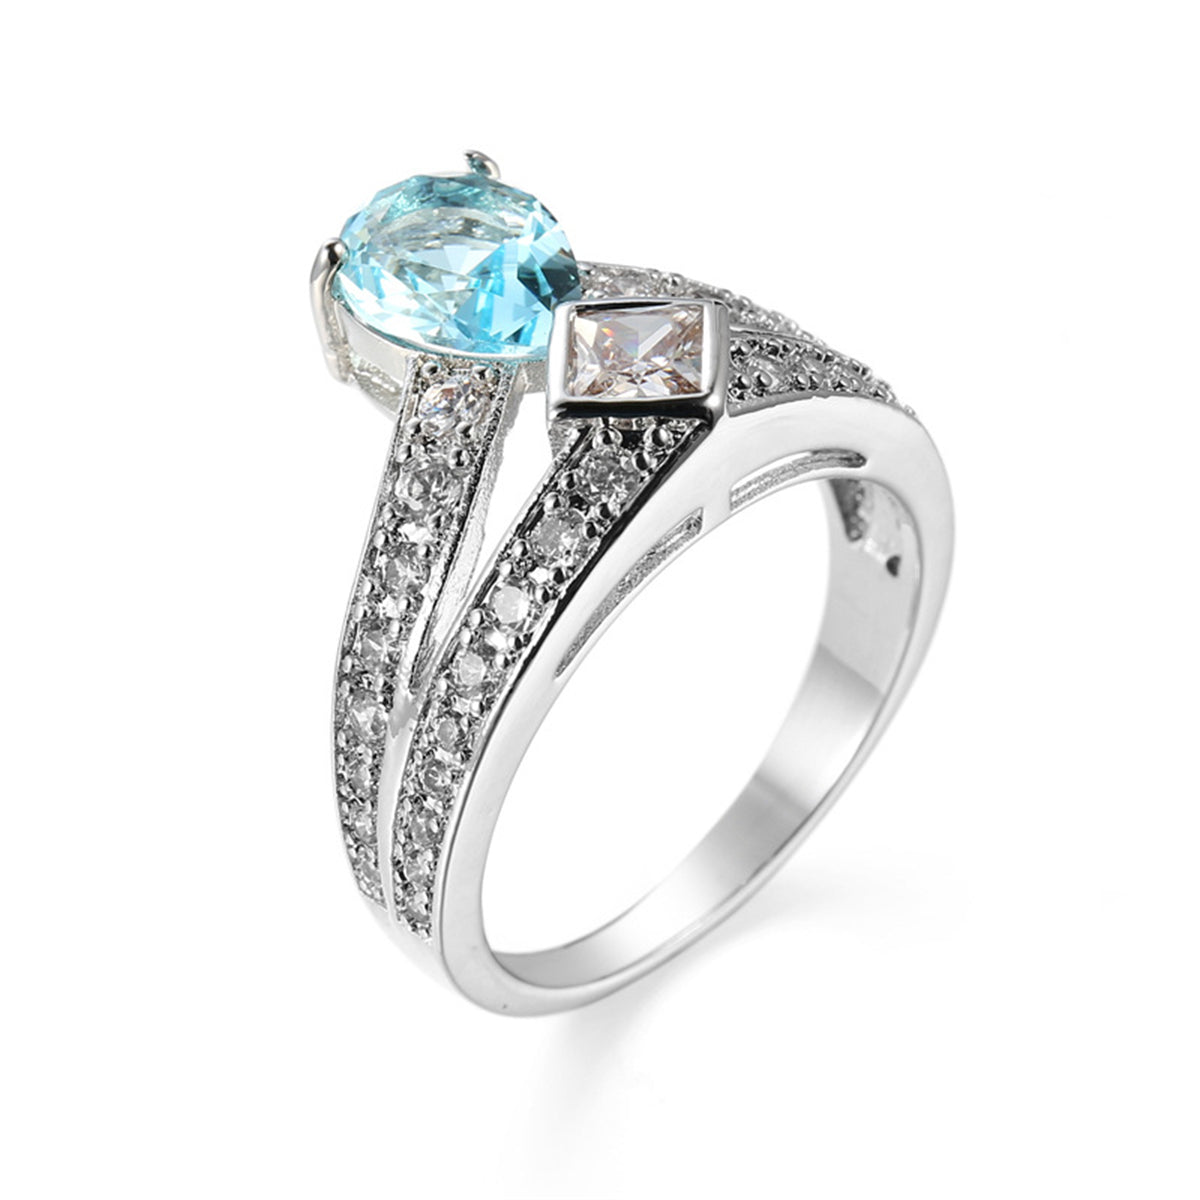 Sea Blue Crystal & Cubic Zirconia Pear-Cut Ring